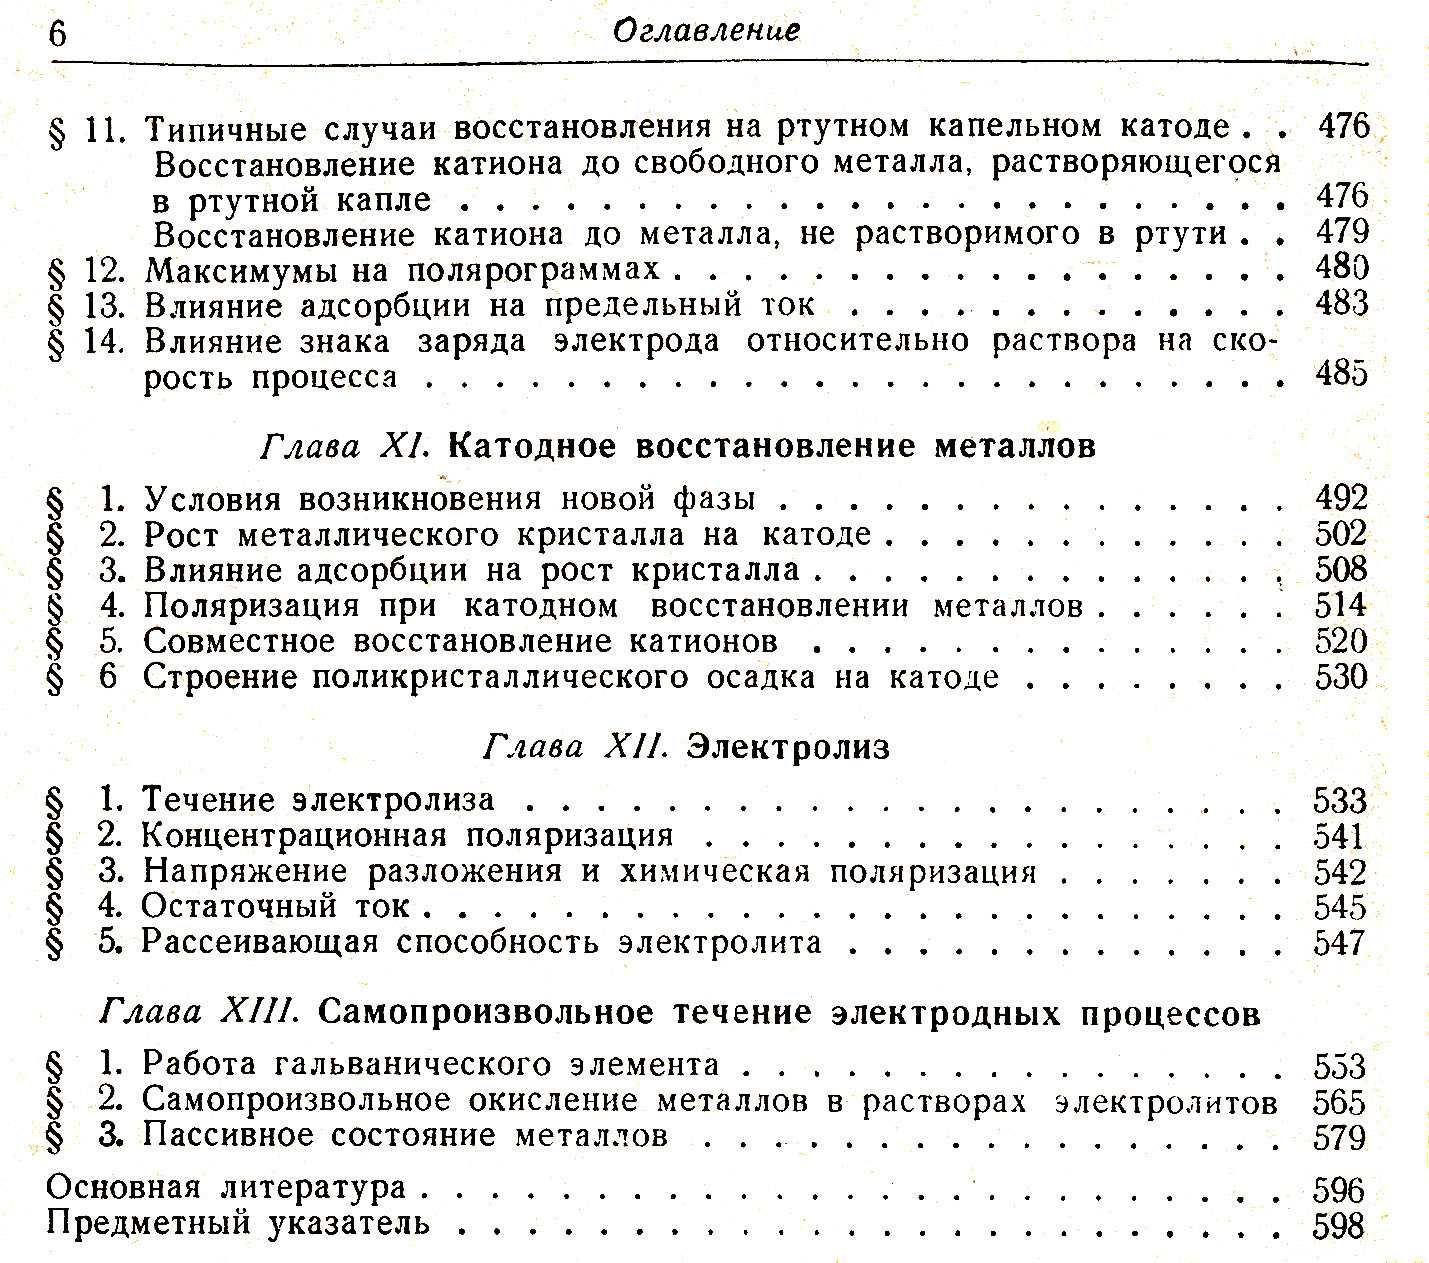 Теоретическая электрохимия, В.В.Скорчелетти, 1963